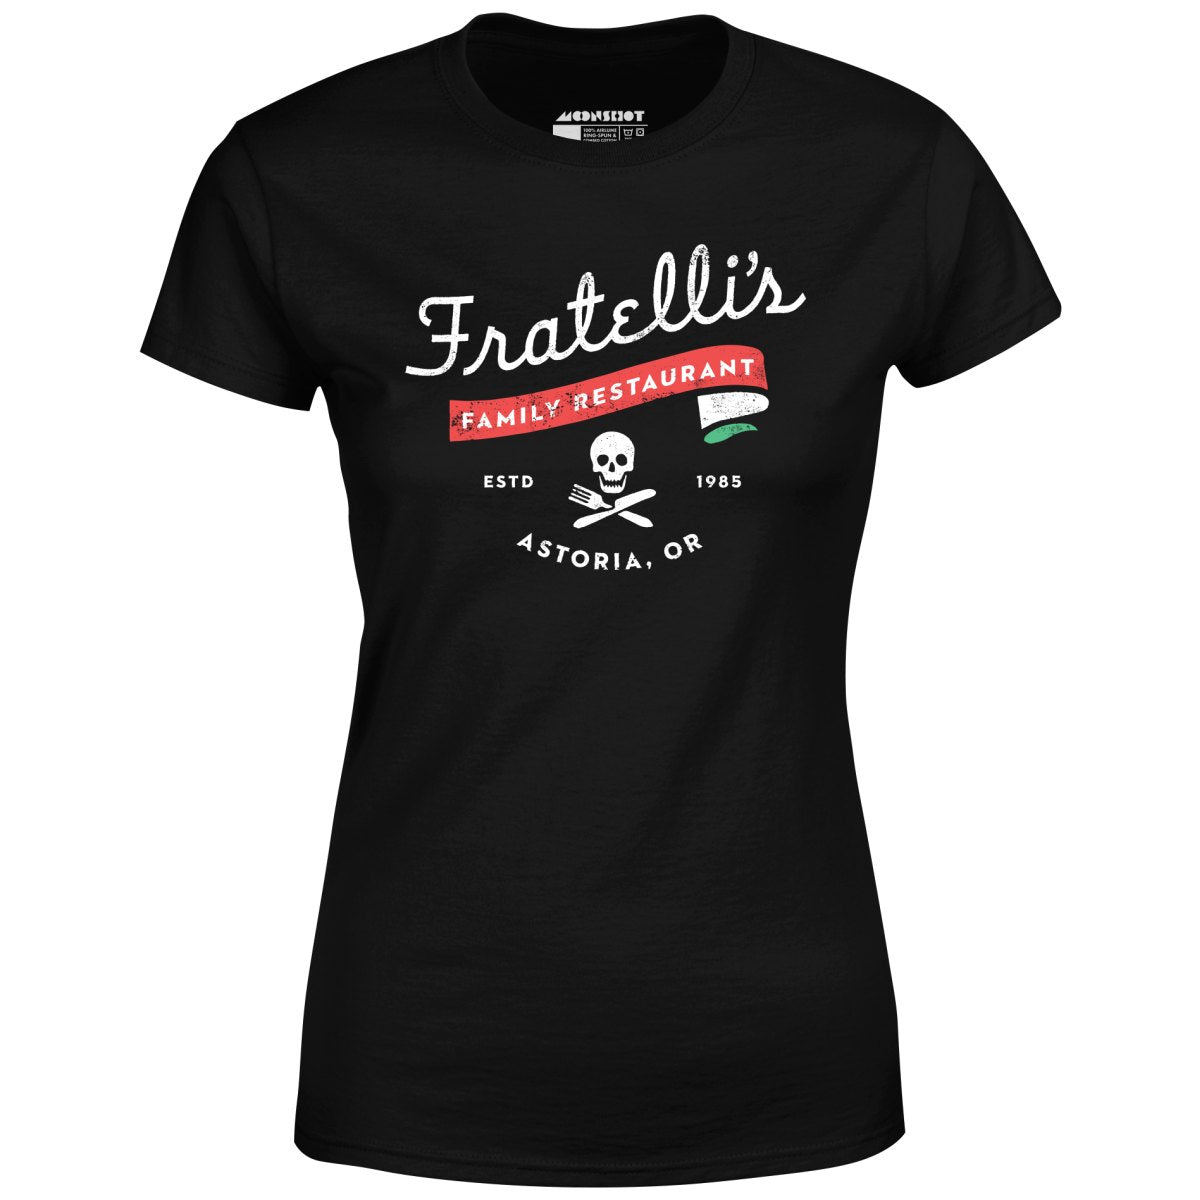 Fratelli's Family Restaurant - Women's T-Shirt